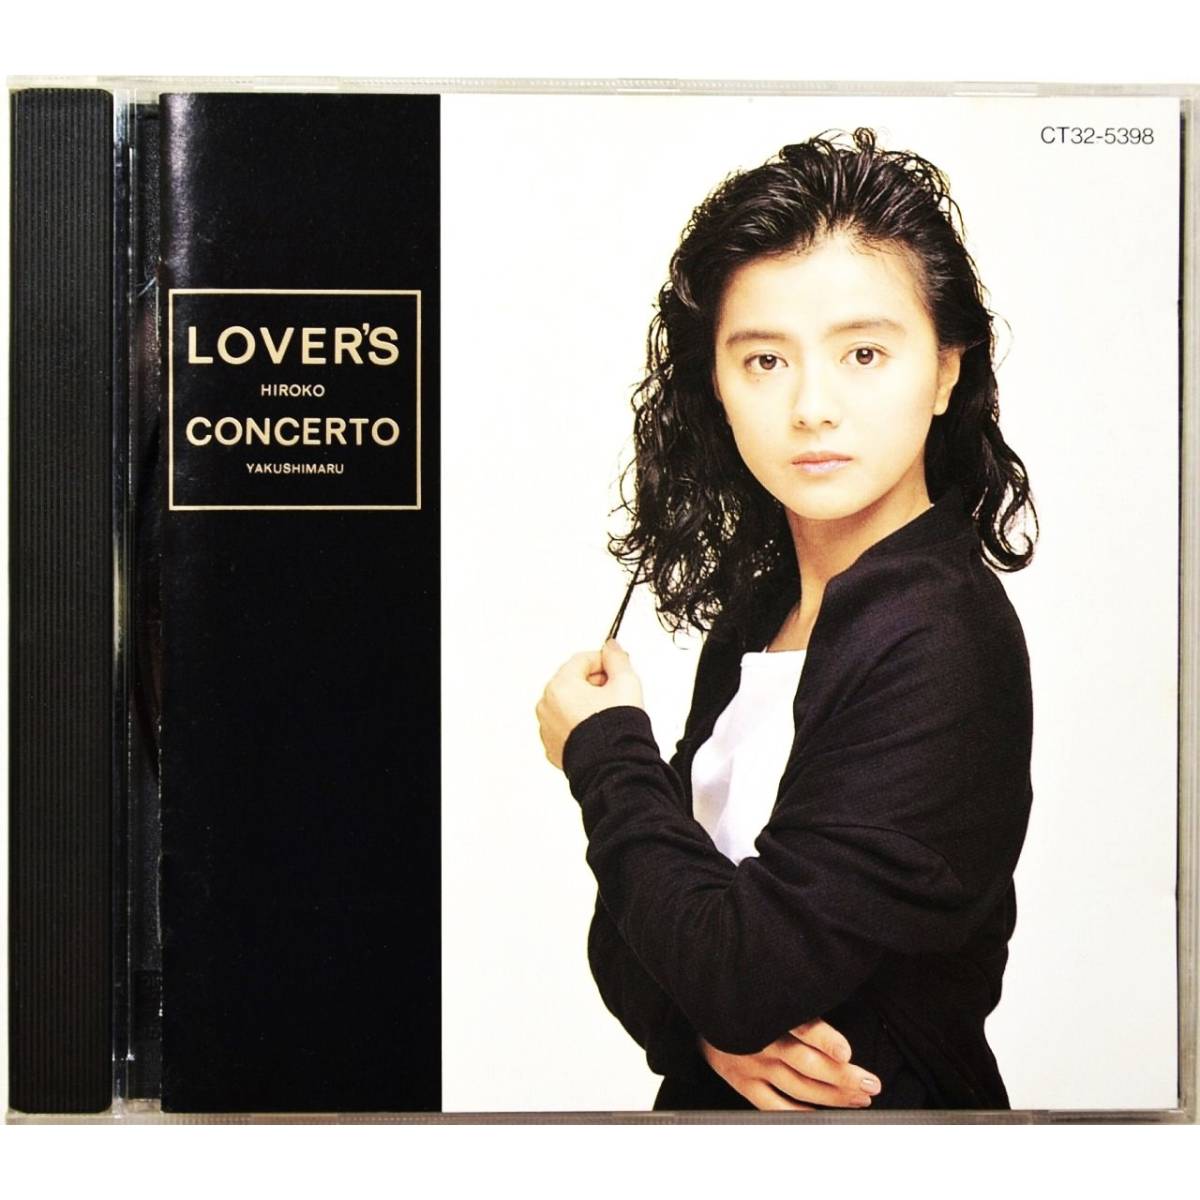 薬師丸ひろ子 / ラヴァーズ・コンチェルト ◇ Hiroko Yakushimaru / Lover's Concerto ◇ 国内盤 ◇_画像1